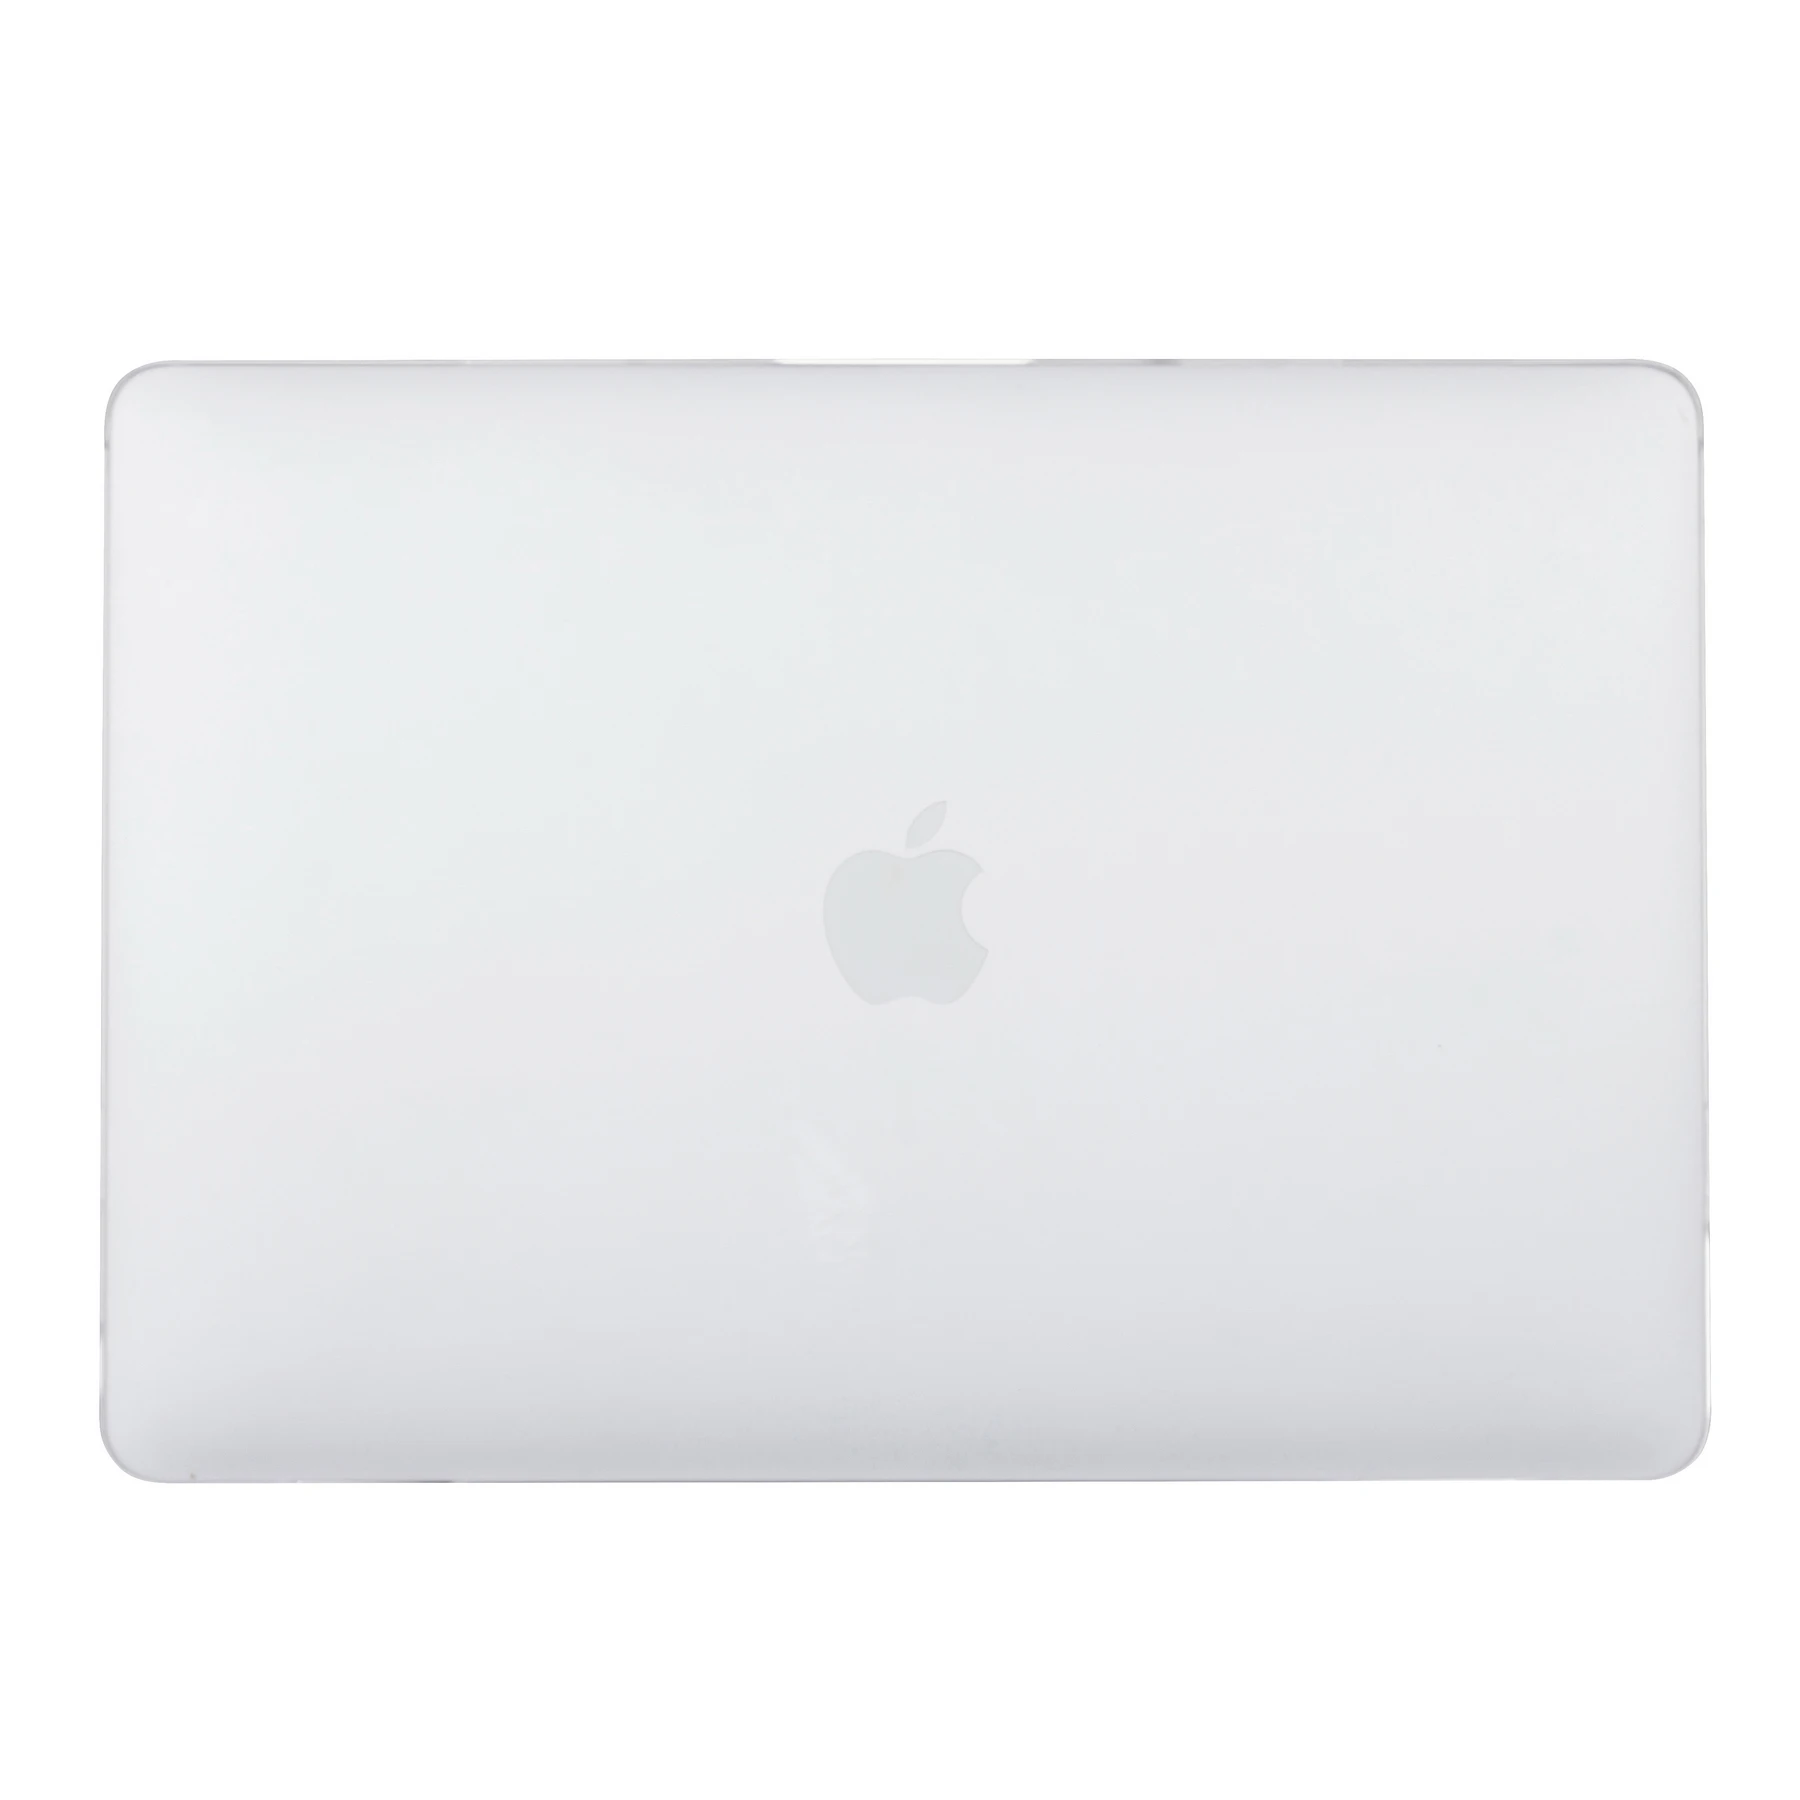 Чехол для ноутбука EGYAL для APPle MacBook Air 11 13 retina 13 15 New Pro 13 дюймов с сенсорной панелью матовый чехол Новая модель A1932